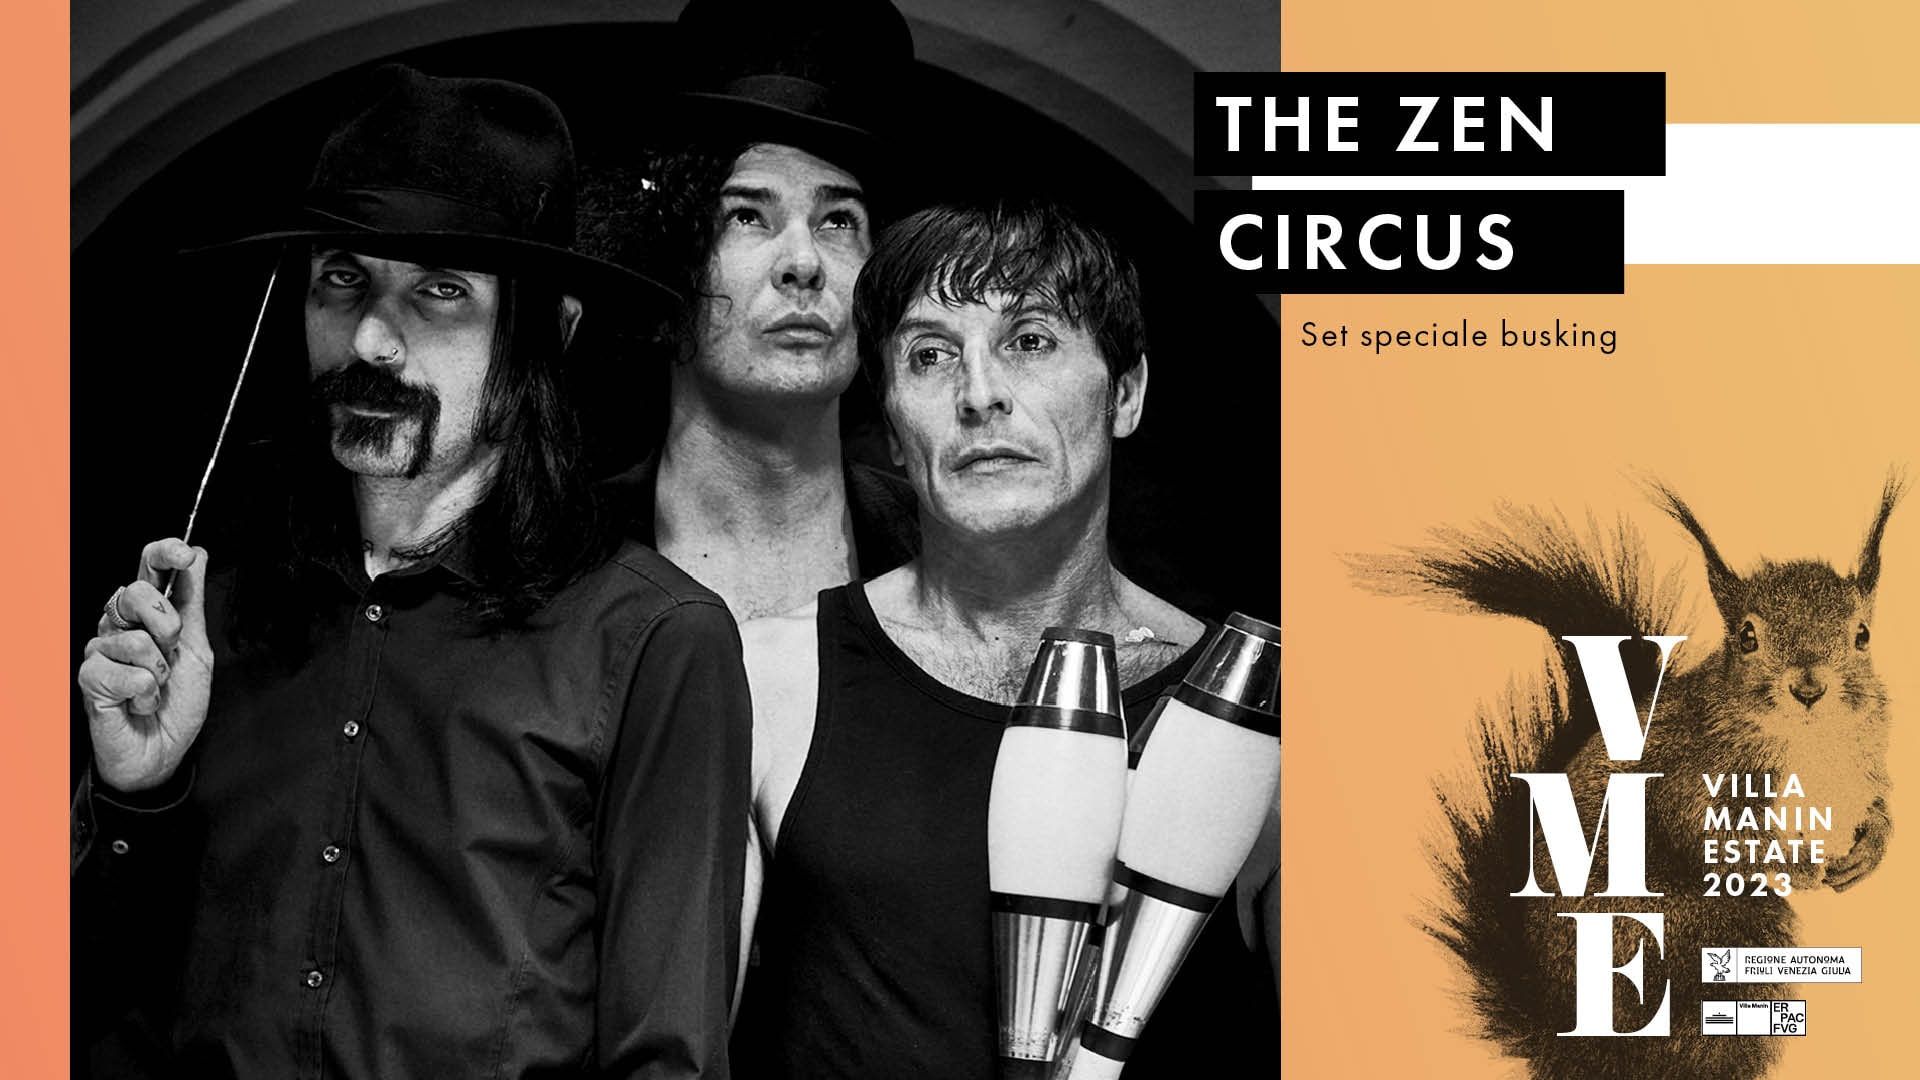 THE ZEN CIRCUS, uno dei gruppi più amati del rock alternativo italiano, domenica 25 giugno daranno il via ai CONCERTI NEL PARCO di Villa Manin Estate 2023